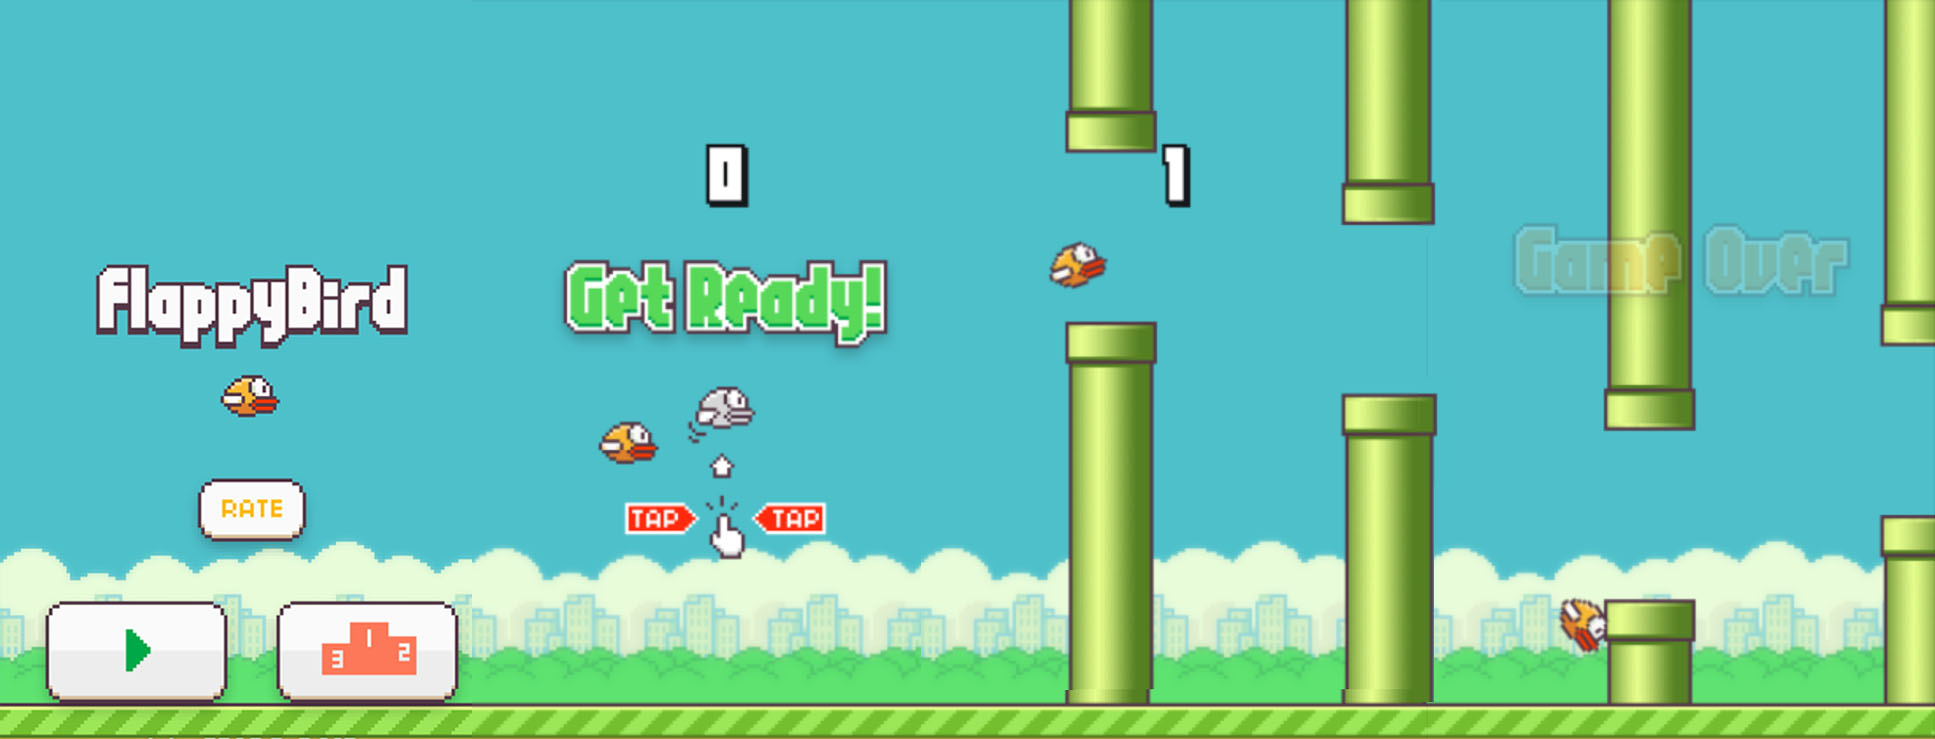 O real motivo da exclusão de Flappy Bird, segundo seu criador